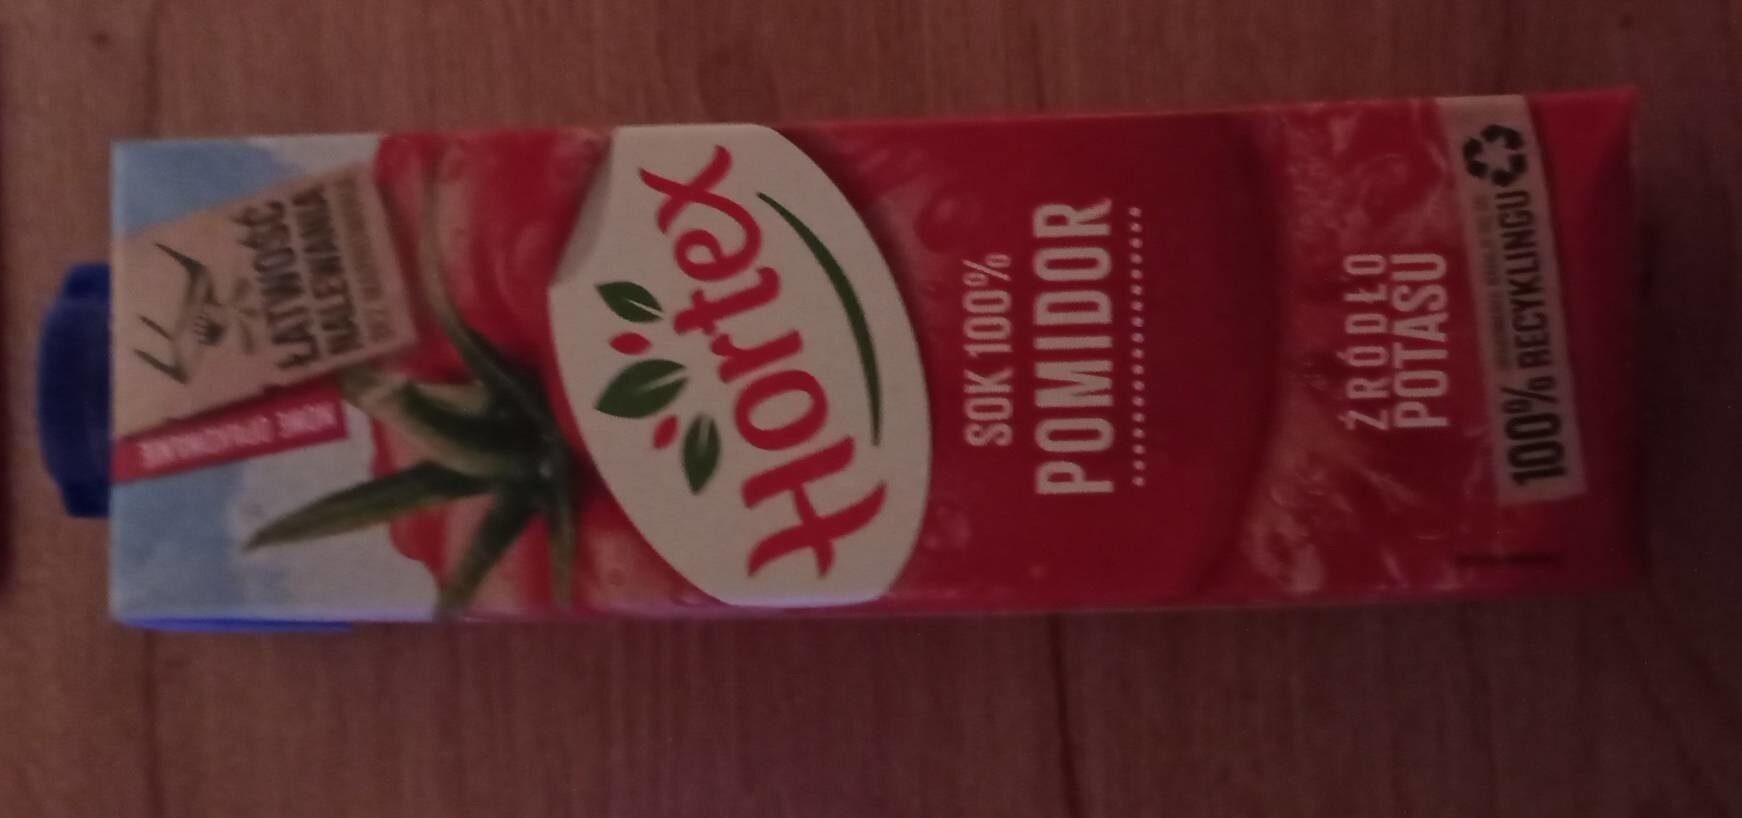 Hortex sok pomidorowy - Product